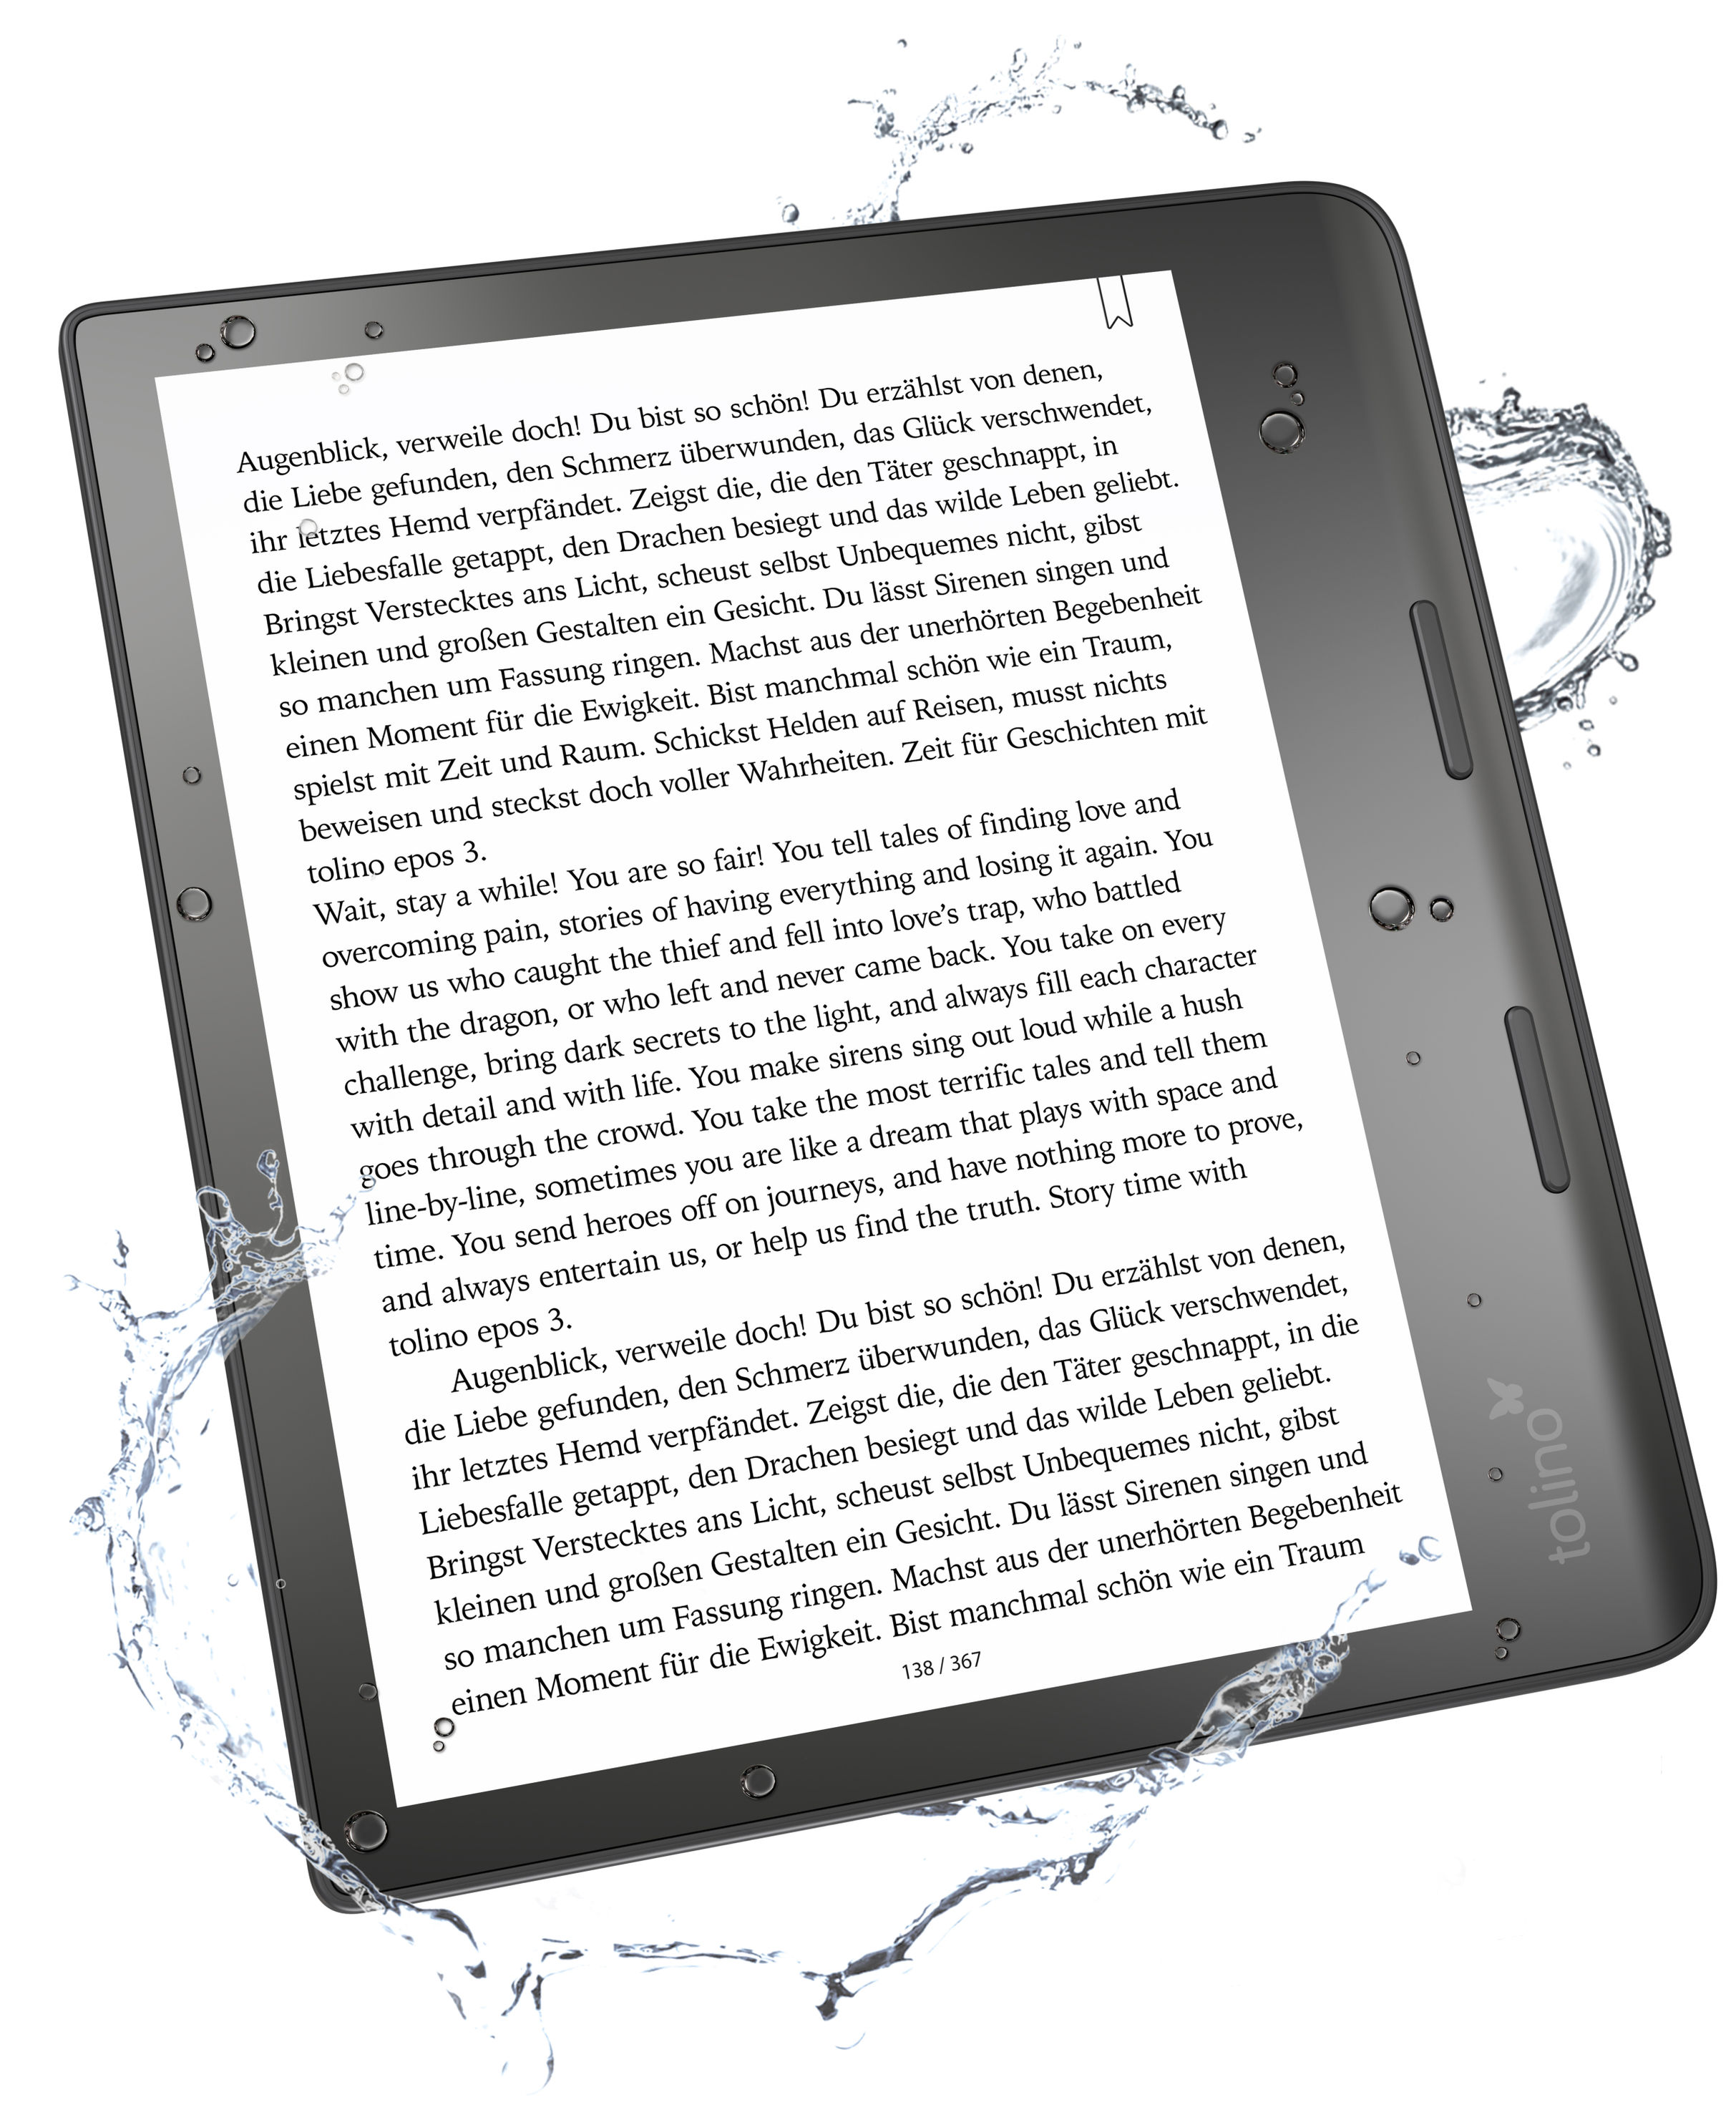 Tolino Shine 3 E-Book Reader mit integrierter Beleuchtung mit